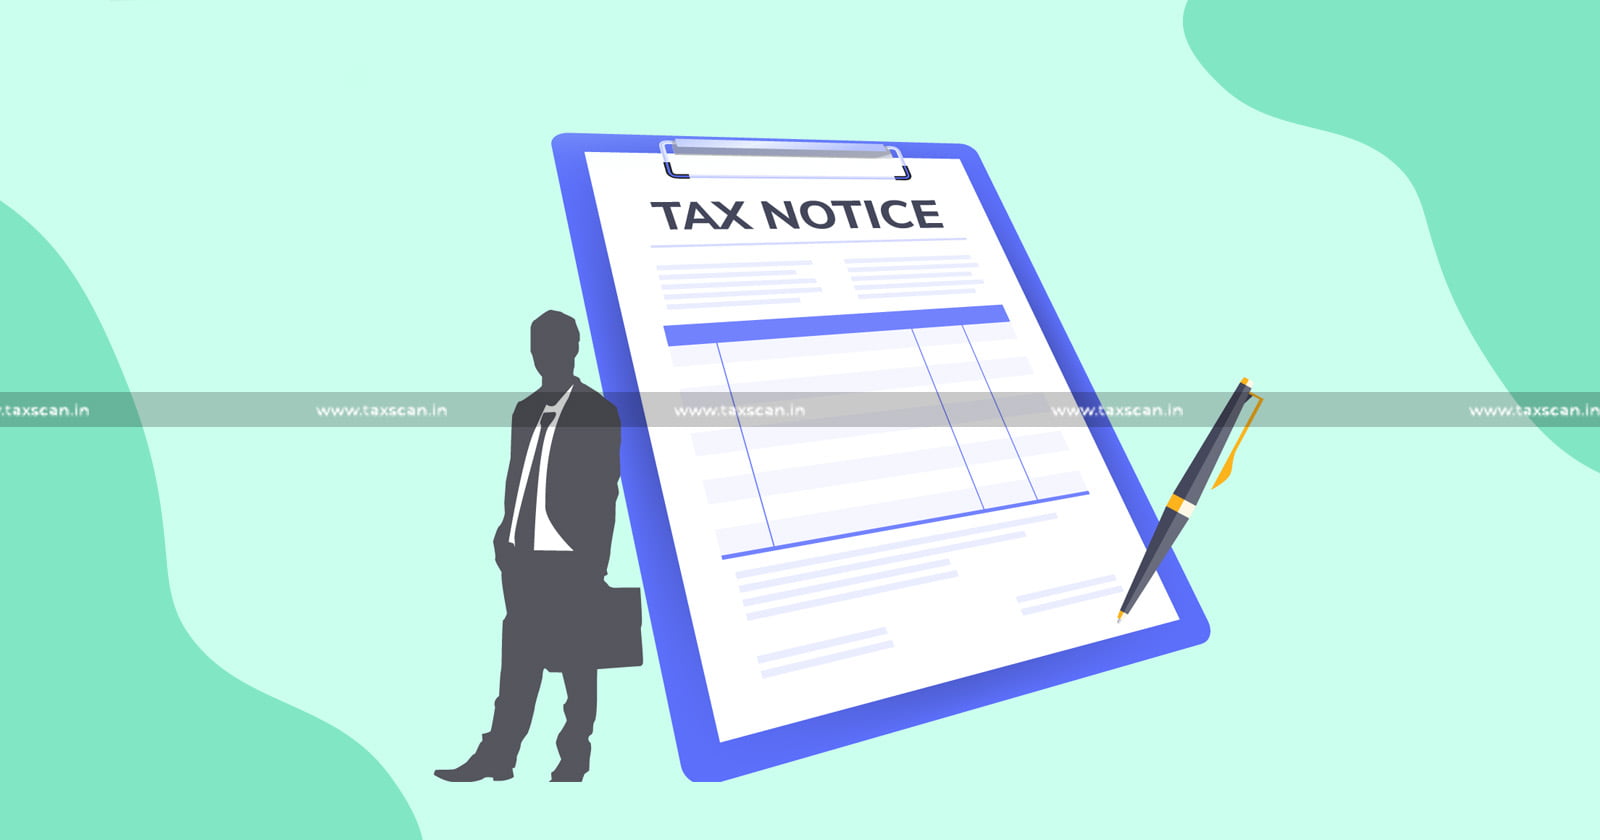 UAE - NRI - Notice - Income Tax - Tax - Income - Income tax reassessment - reassessment notice - reassessment - Taxscan